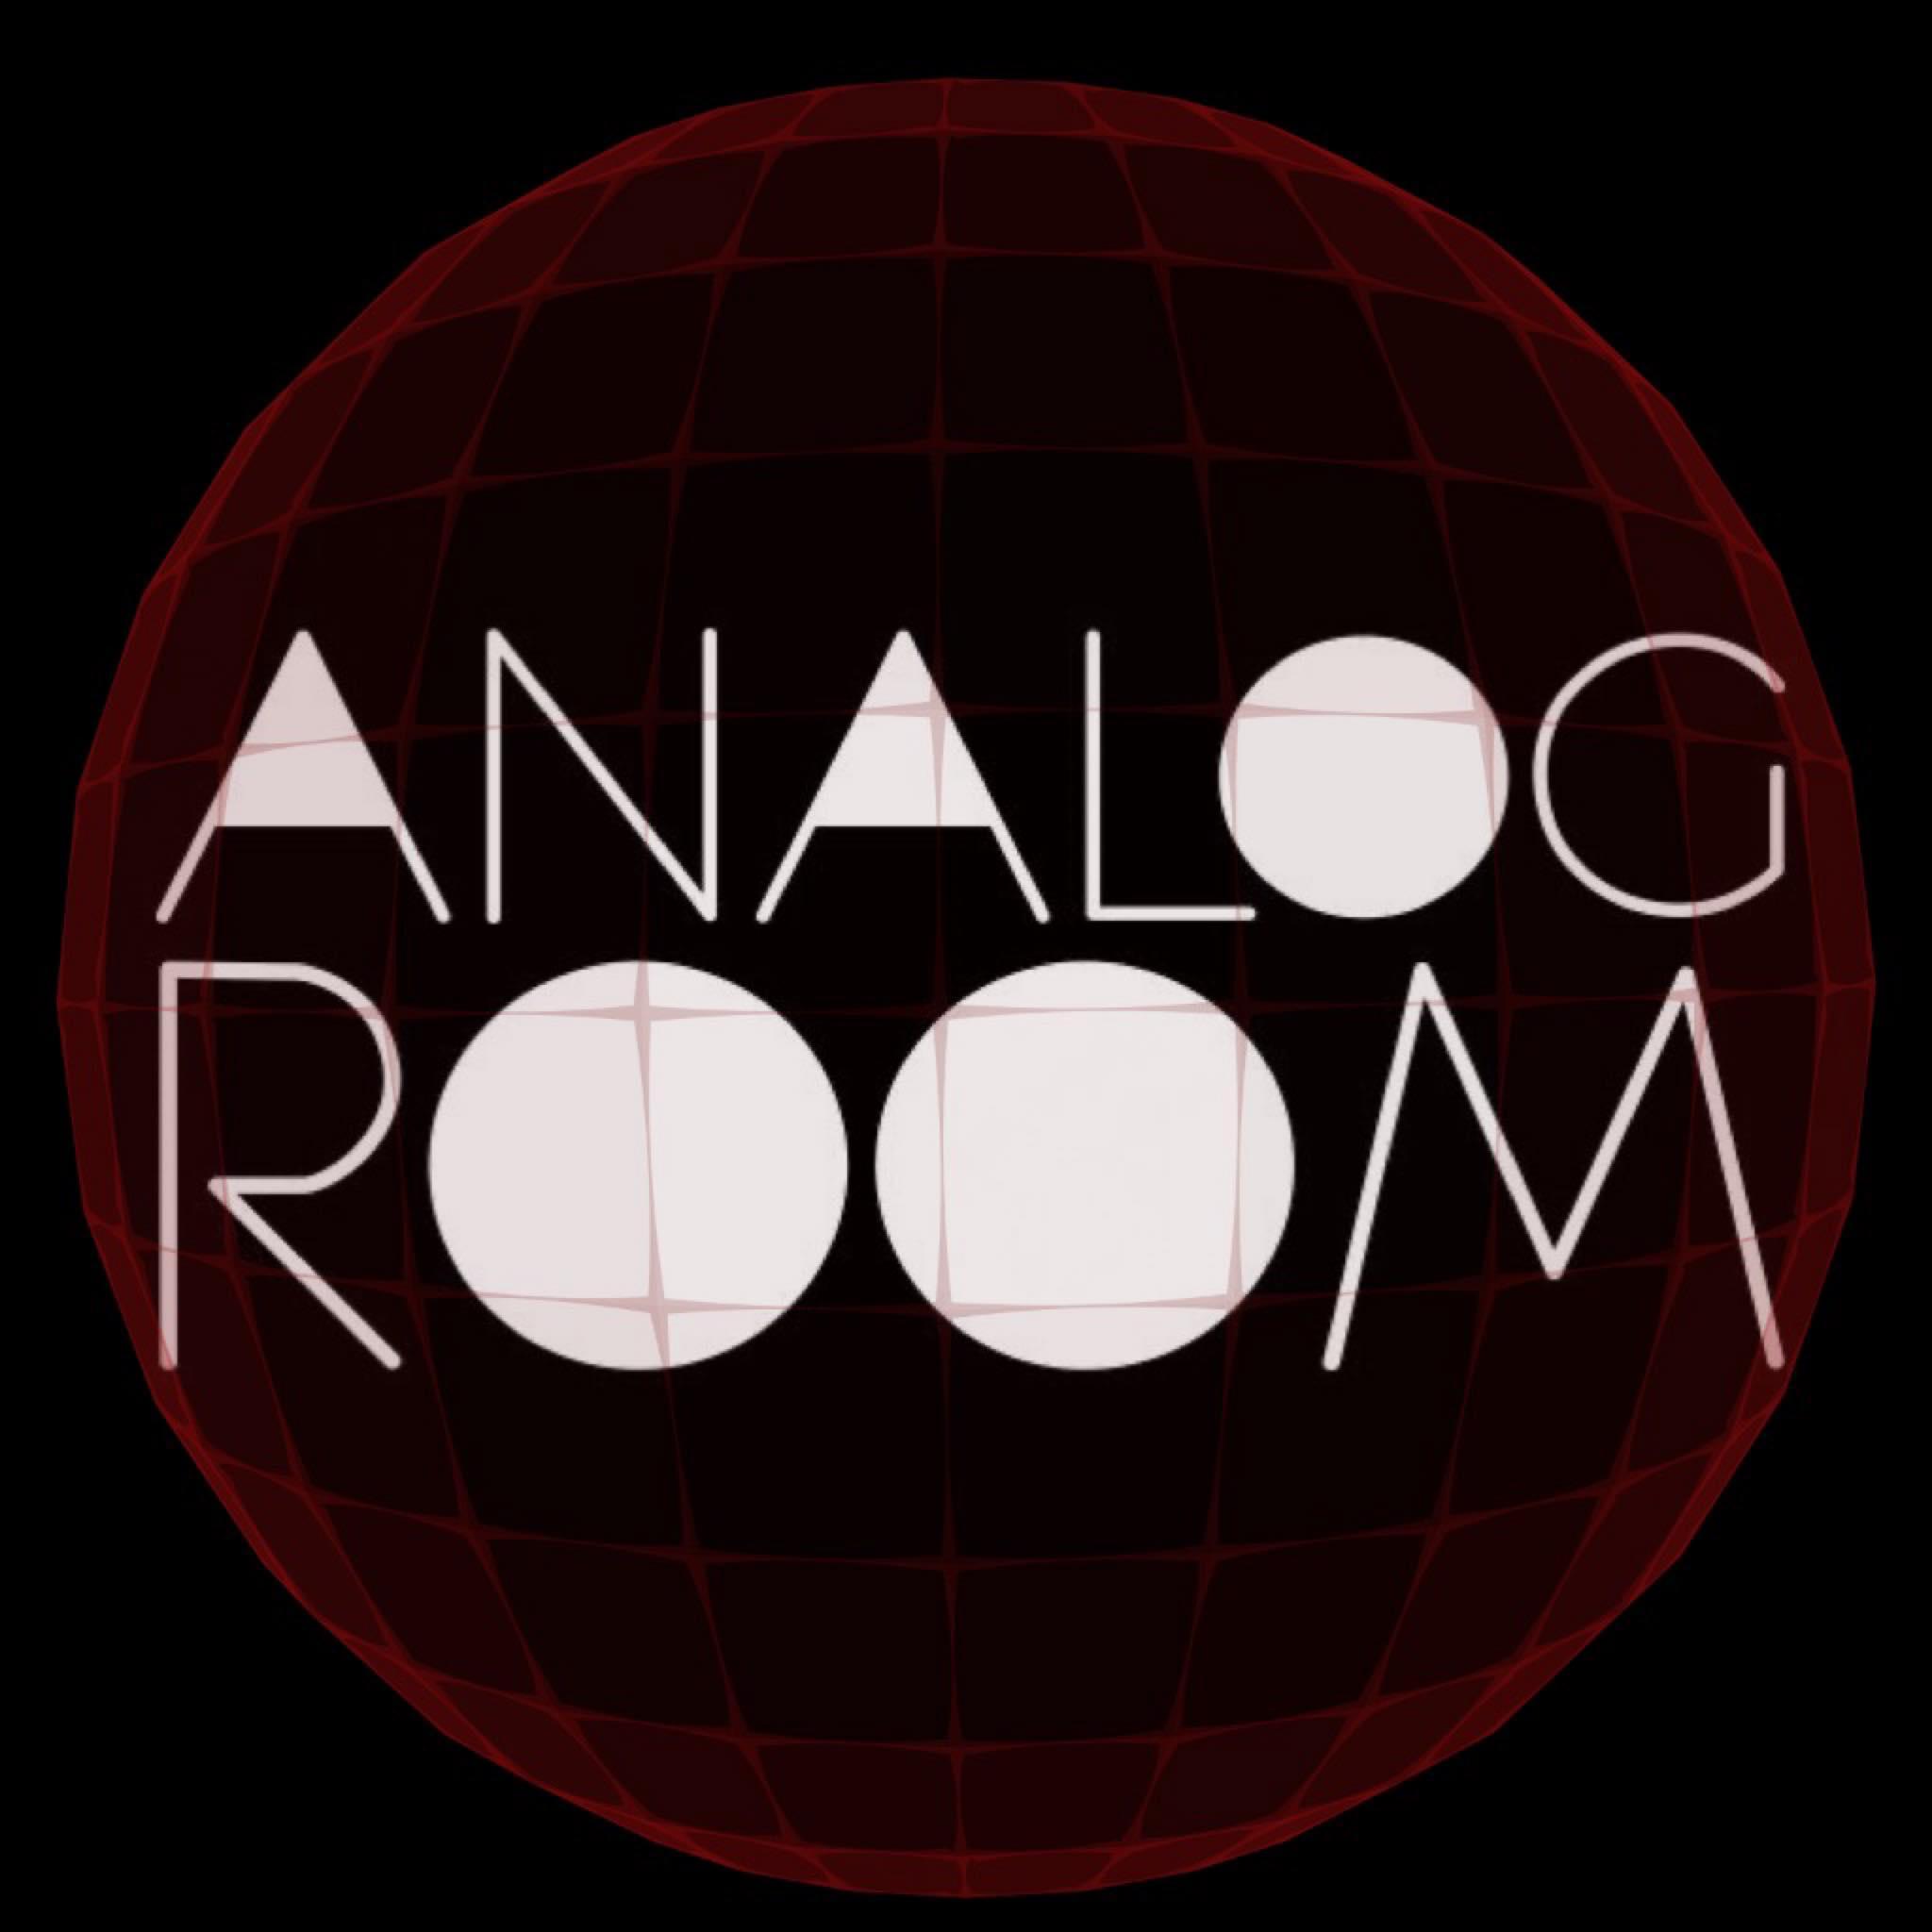 Analog Room pres. Edward - Nasrawi - Shemroon